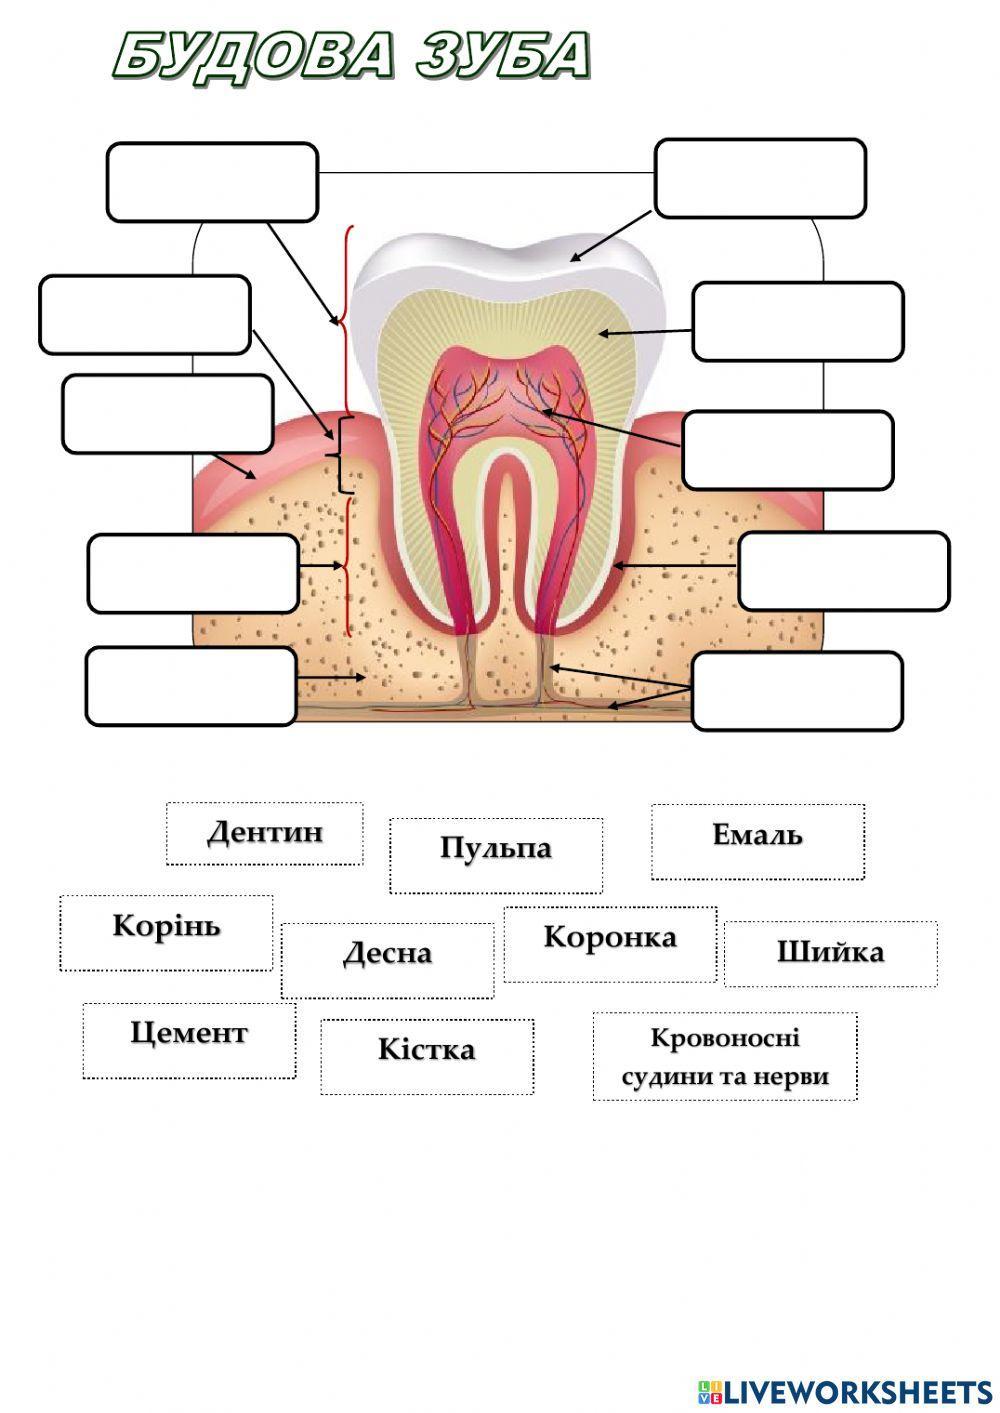 Будова зуба